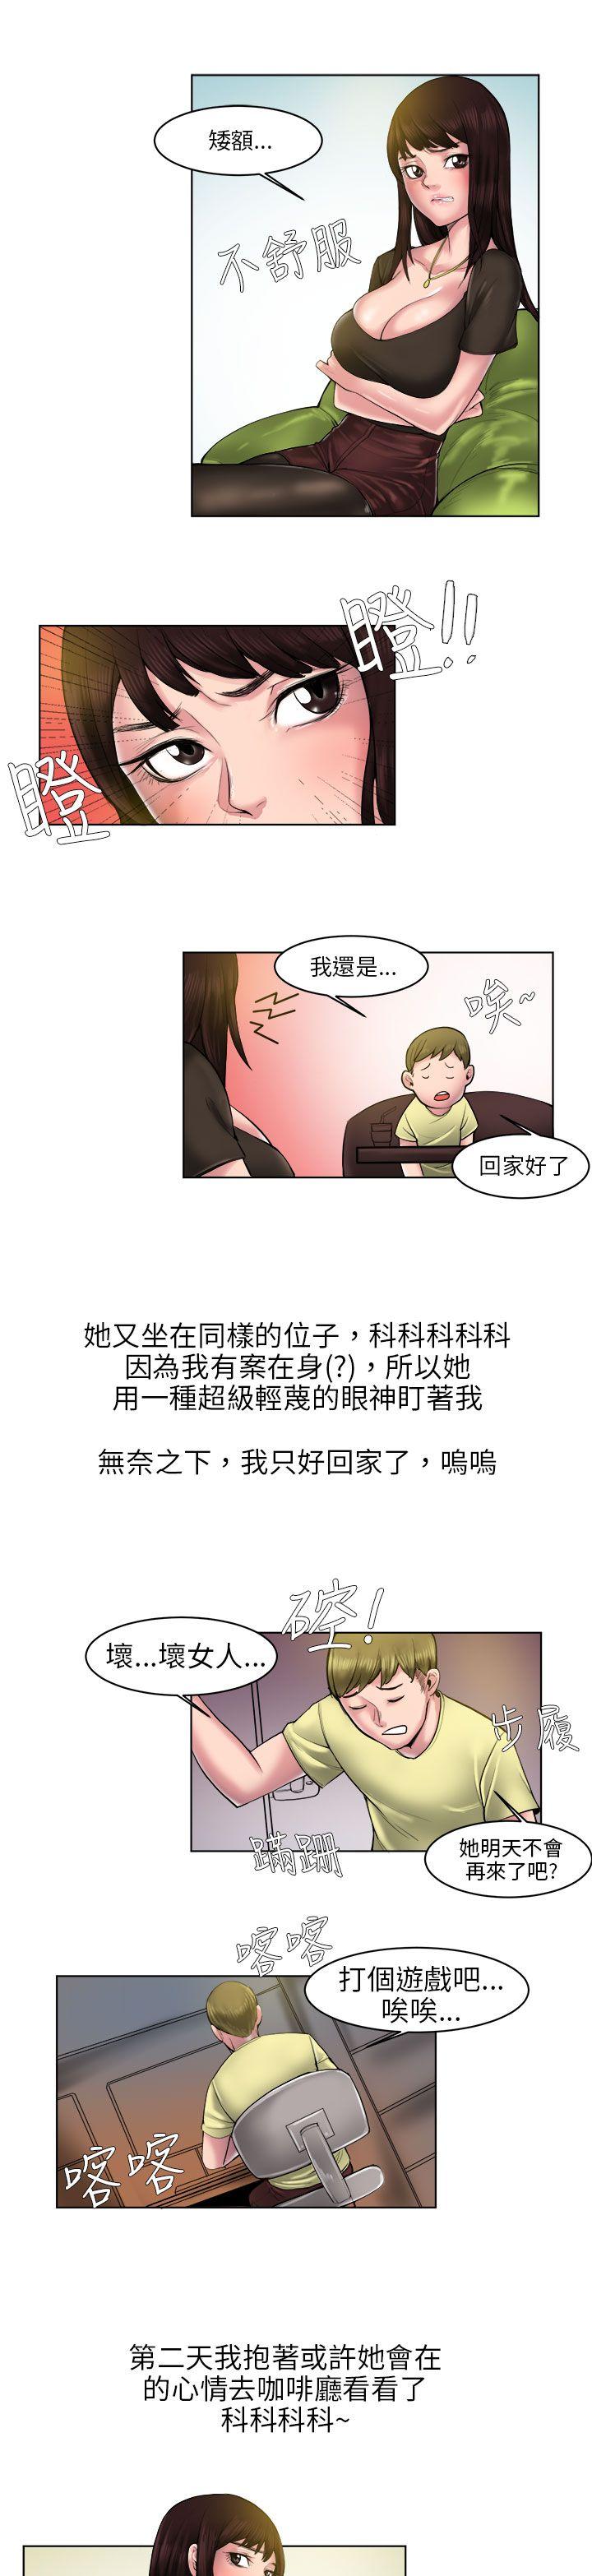 韩国污漫画 秘密Story 咖啡厅里遇到的巨乳女孩(中) 3